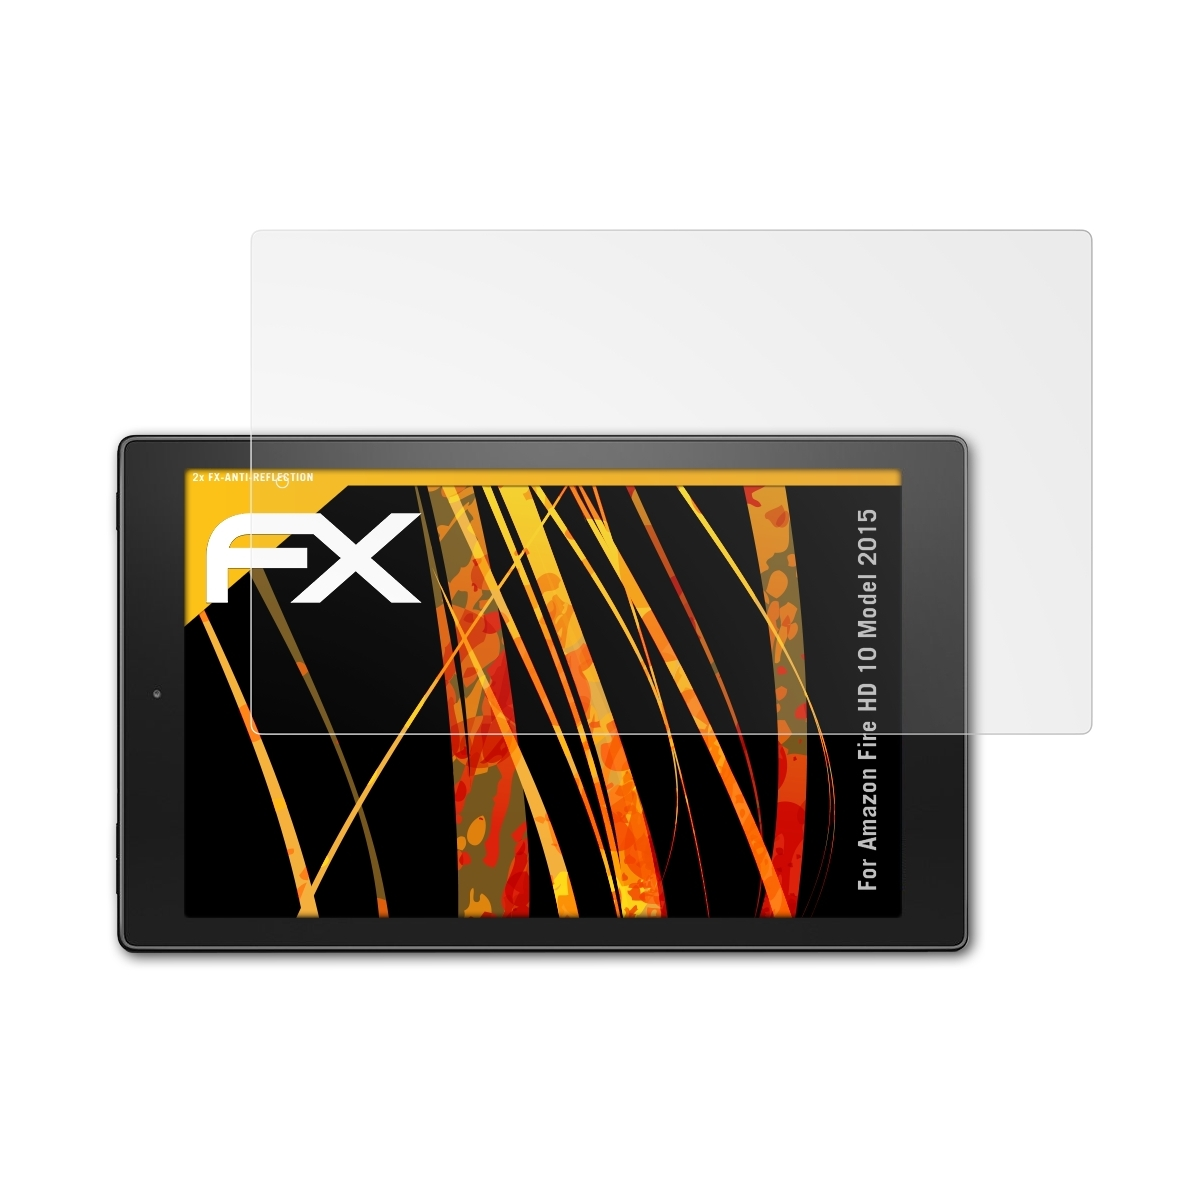 FX-Antireflex (Model 10 Displayschutz(für 2015)) 2x ATFOLIX Amazon Fire HD